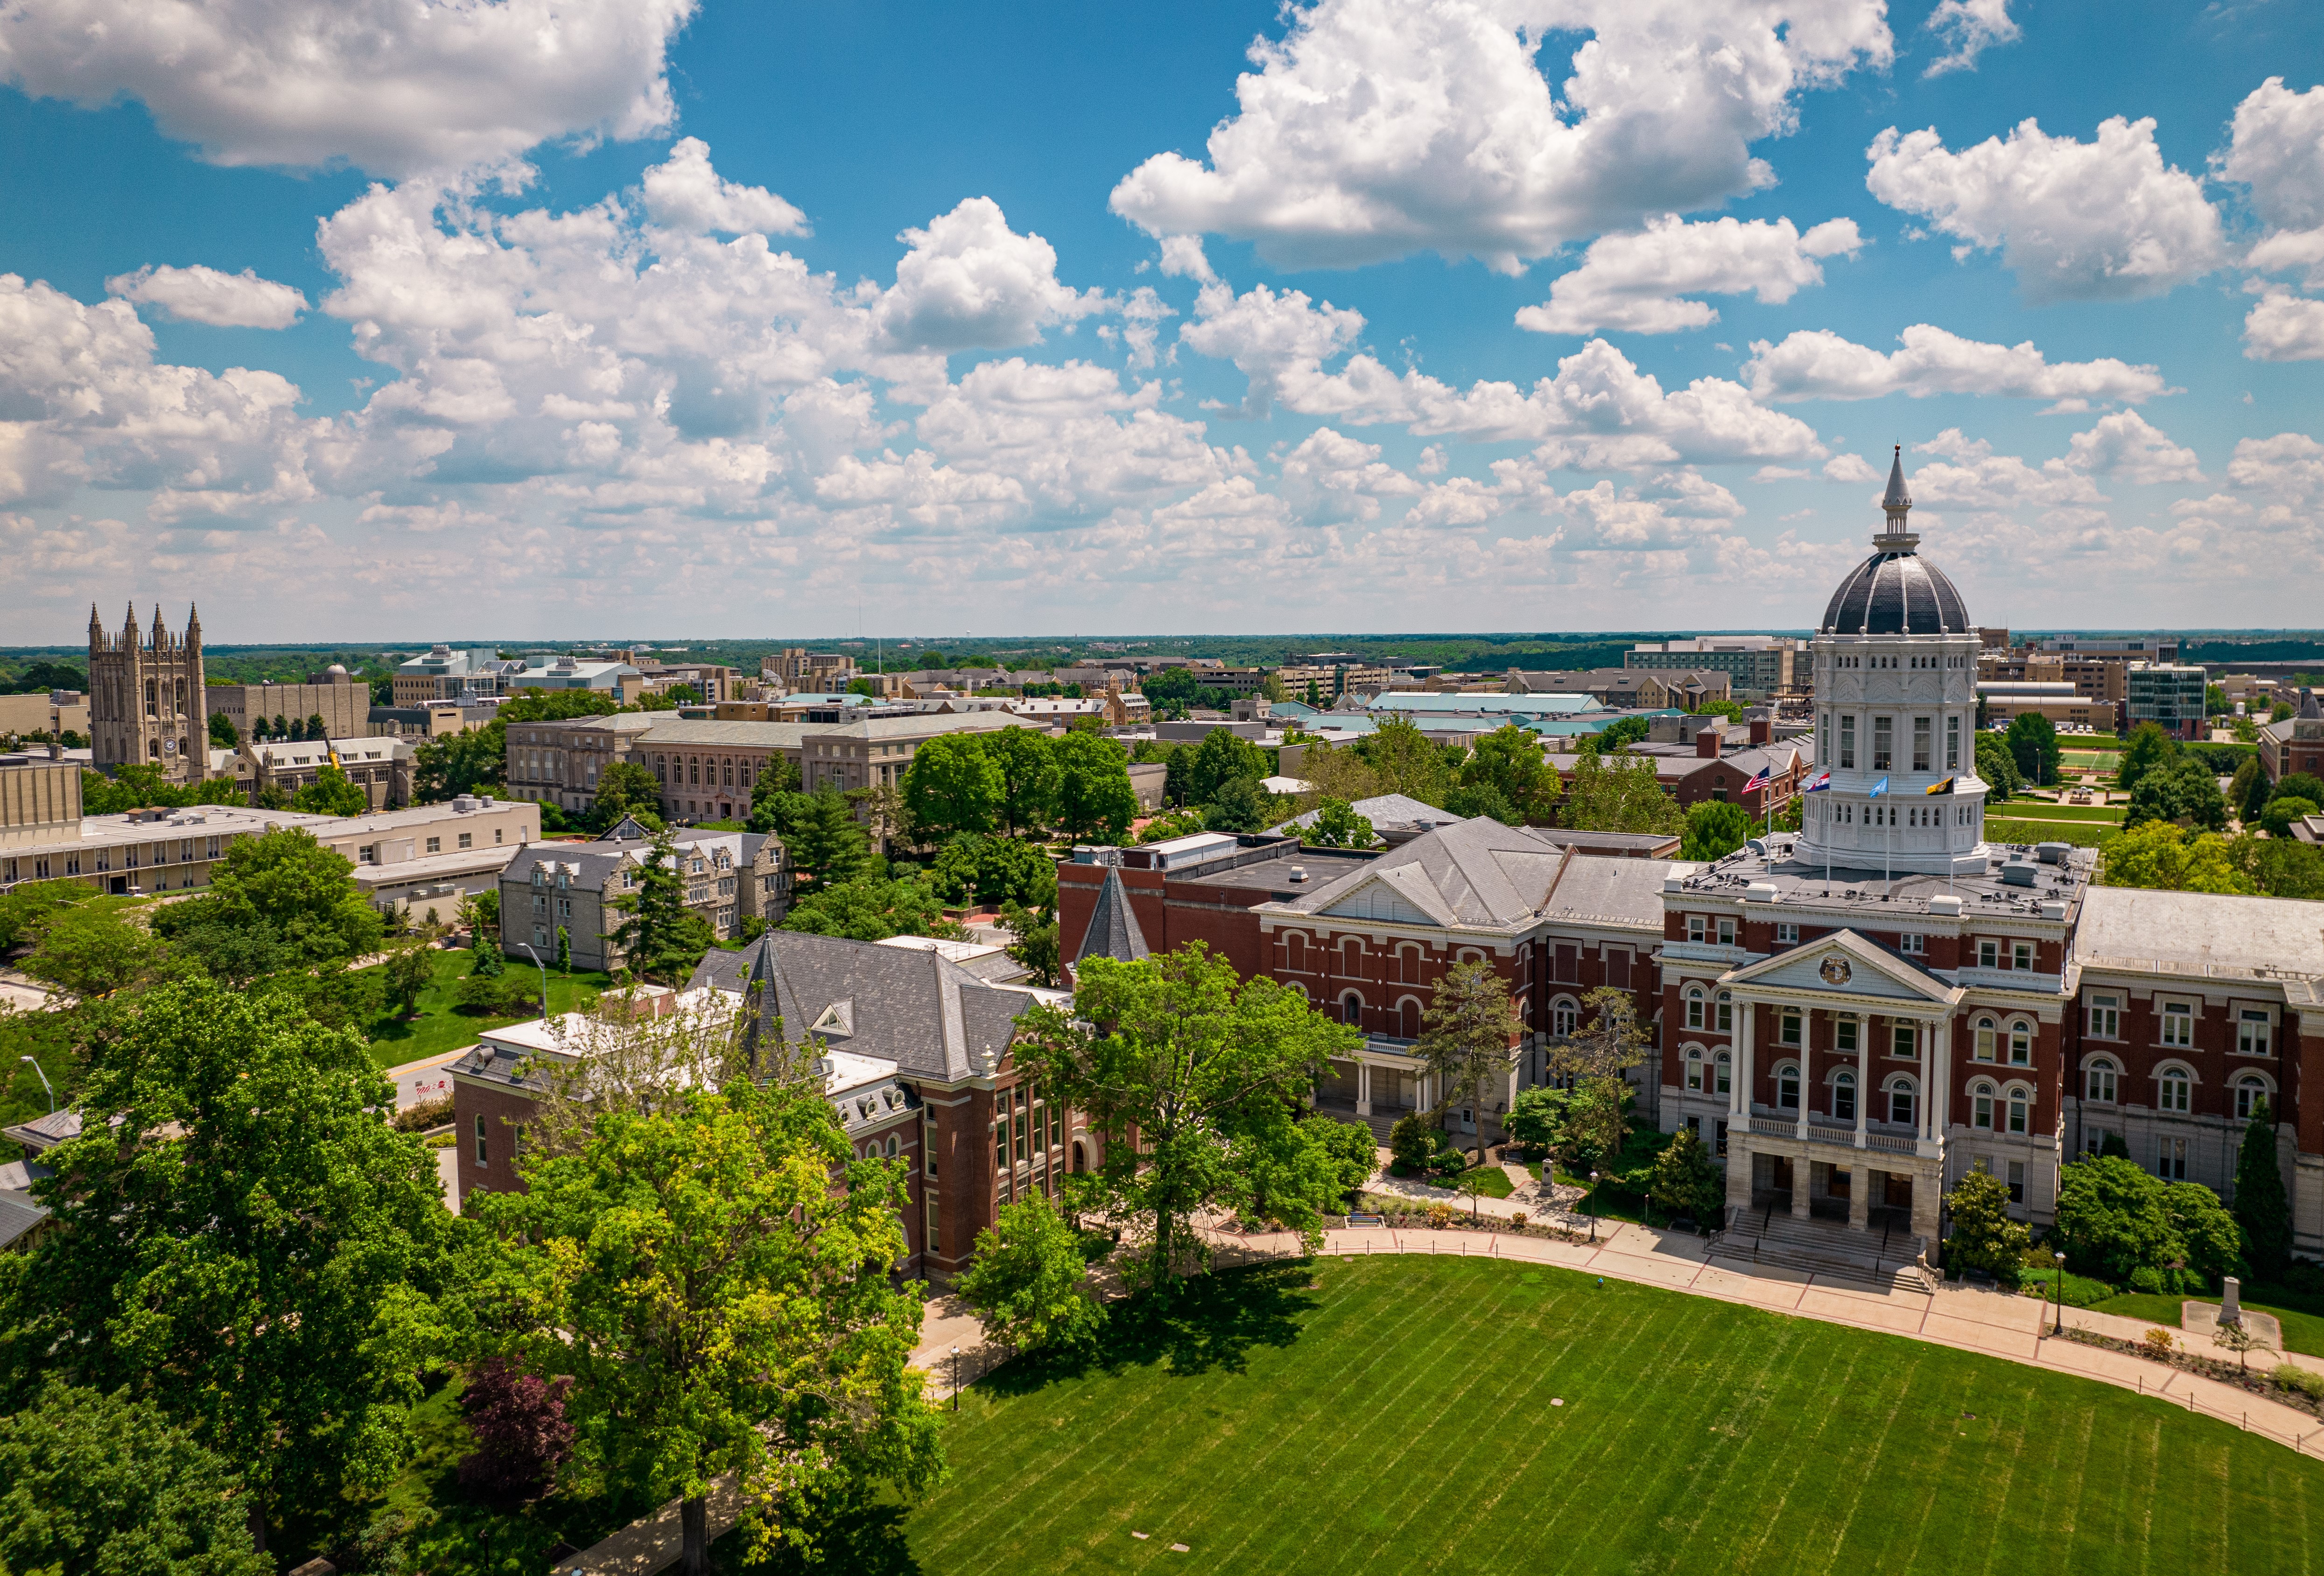 University of Missouri's Jesse Hall